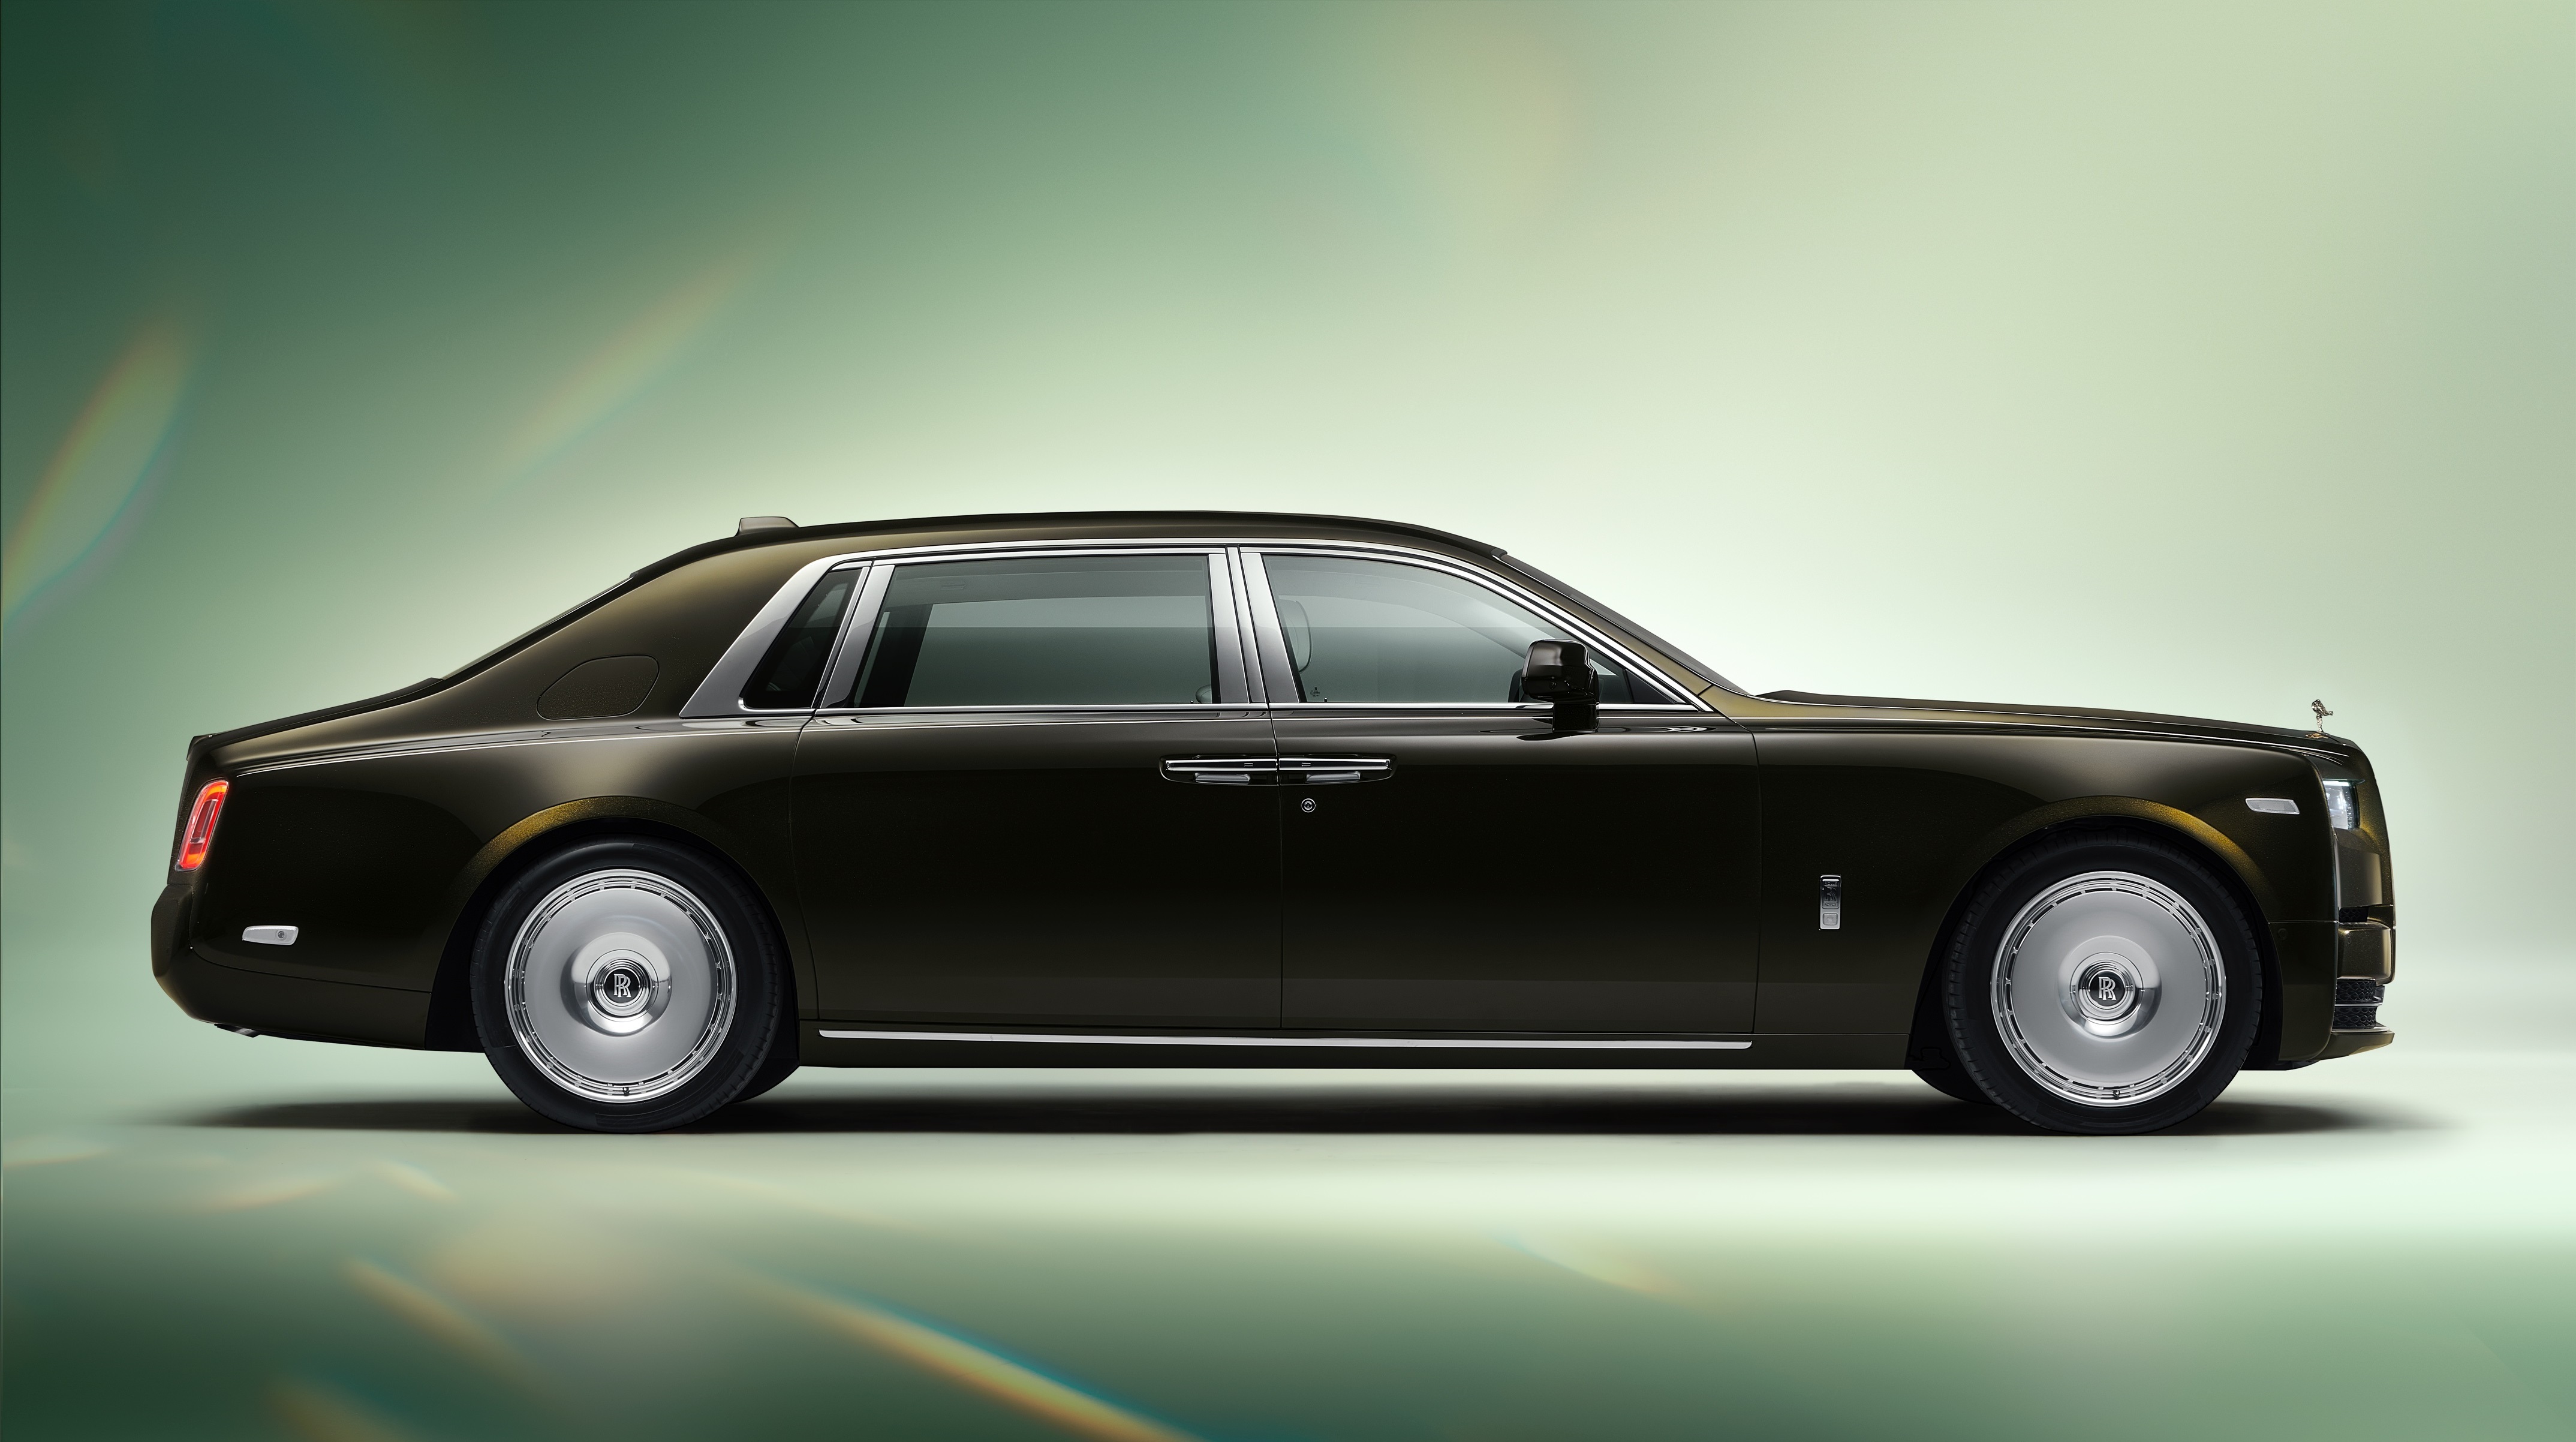 Цены и характеристики Rolls-Royce весь модельный ряд фото - купить легенду мирового автомобилестроения | Сайт